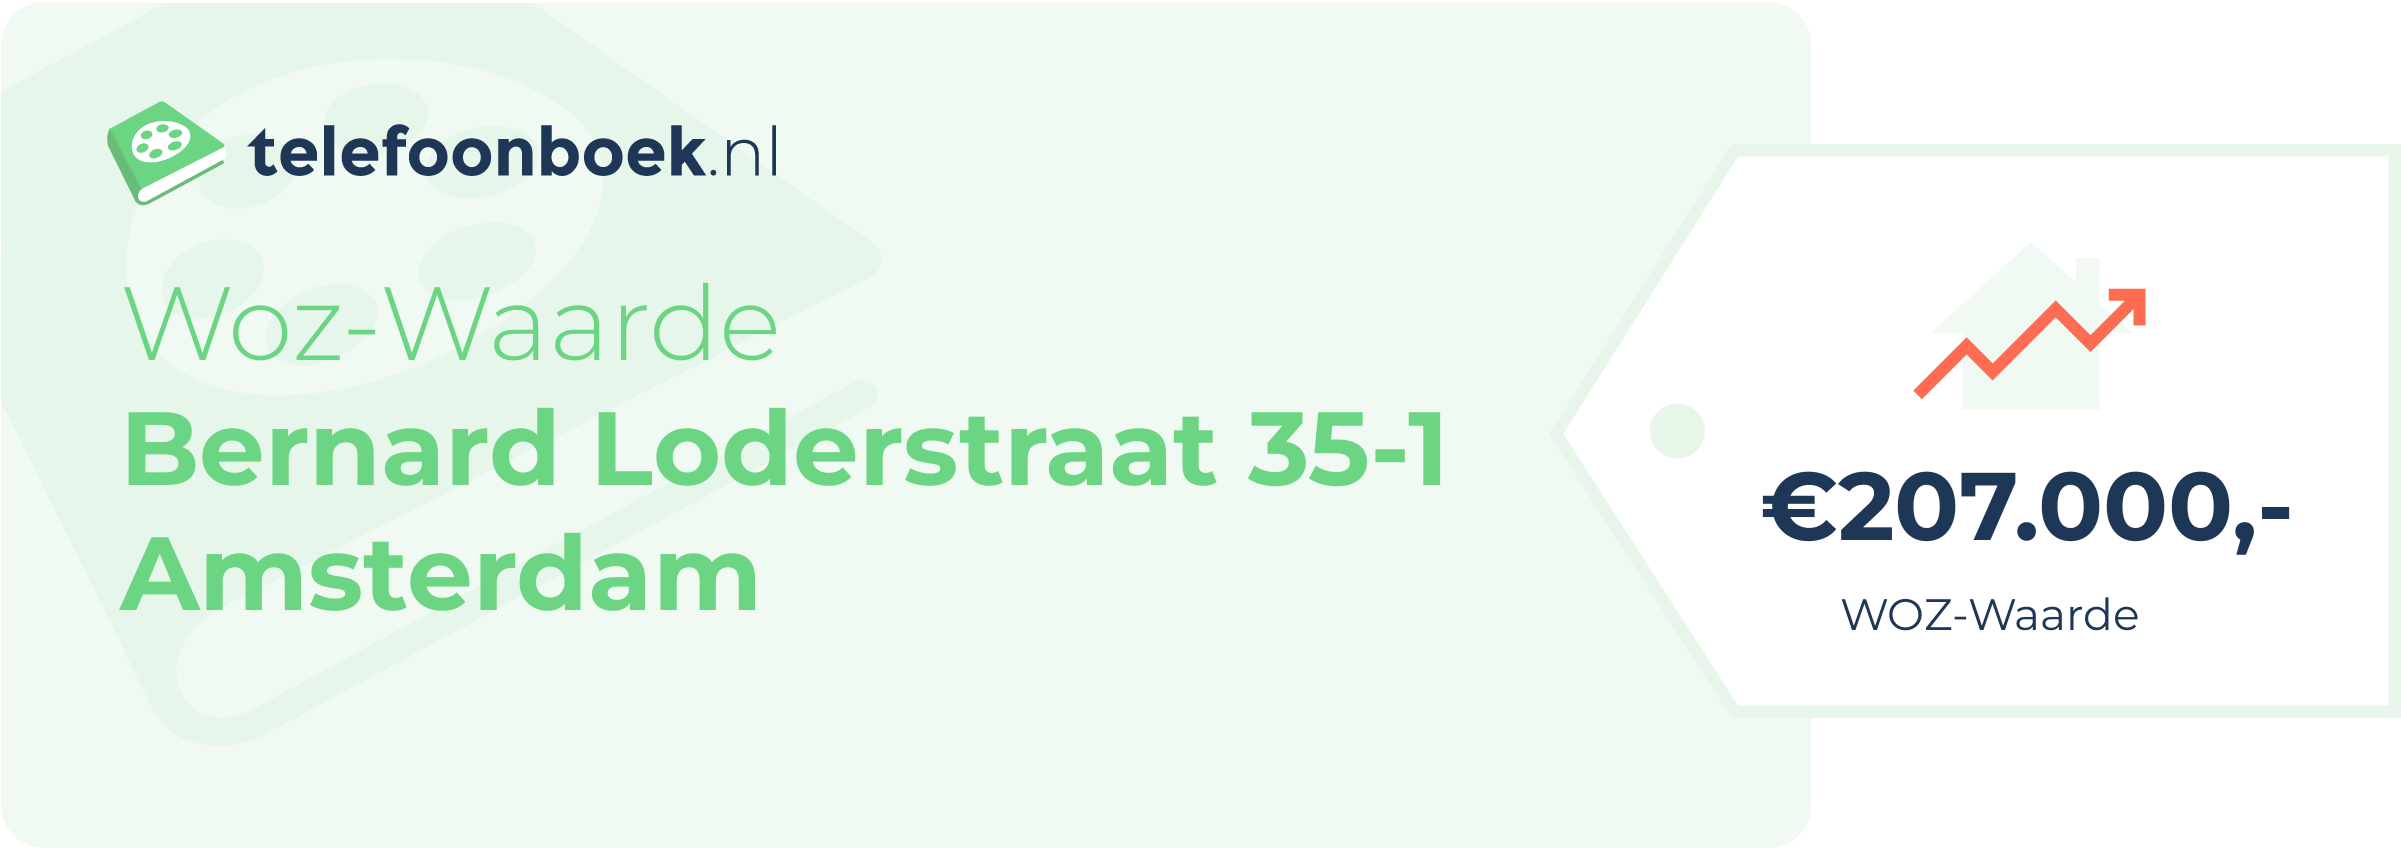 WOZ-waarde Bernard Loderstraat 35-1 Amsterdam